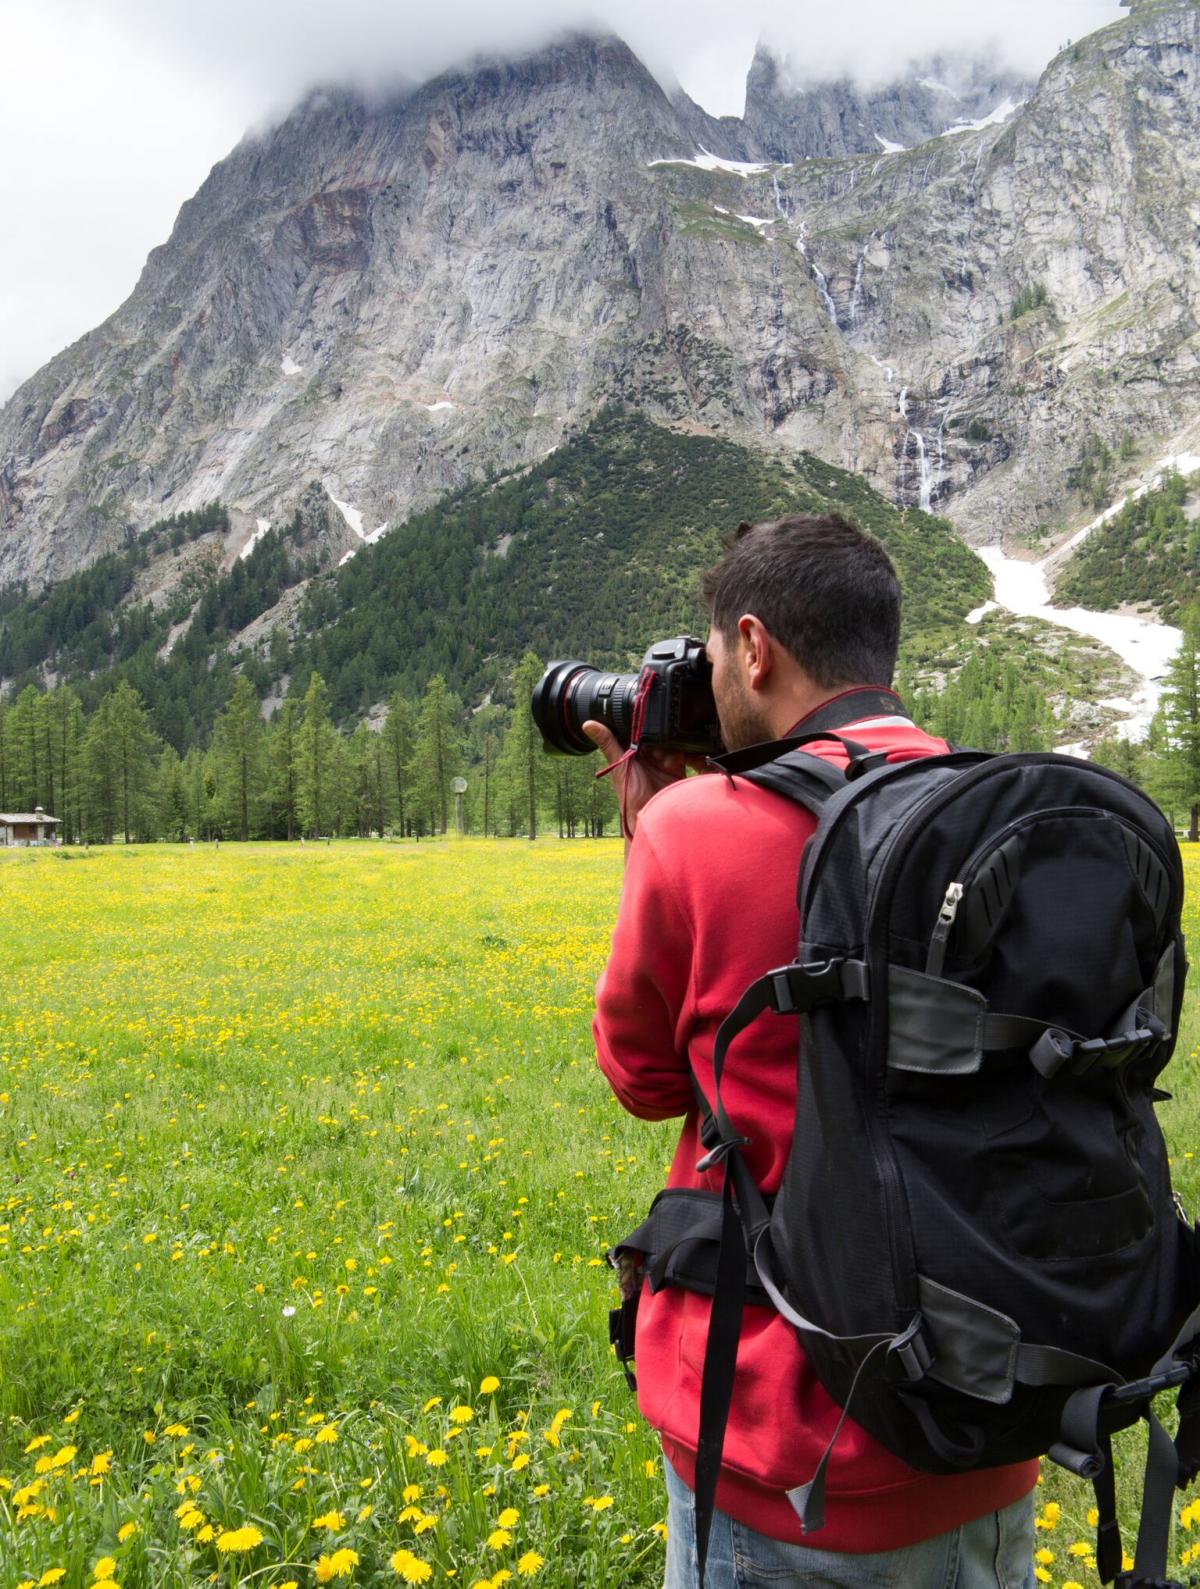 La grande fotografia arriva ai piedi del Monte Bianco dal 26 al 29 luglio